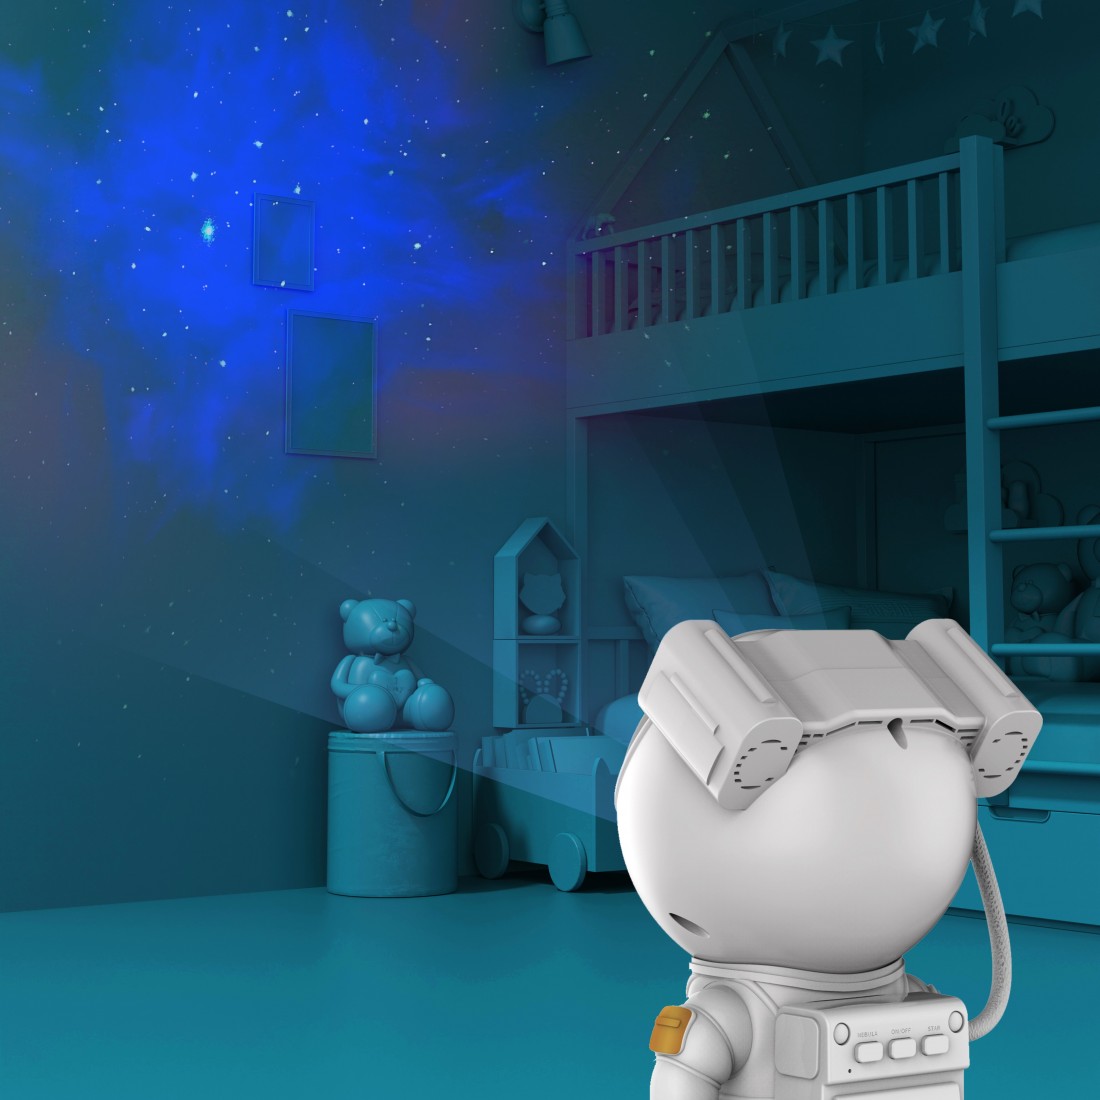 Astronaute Projecteur Galaxy, Projecteur de Galaxie D'astro Starry Sky  Veilleuse avec Nébuleuse, Minuterie et Télécommande, Lampe étoilée pour  Chambre à Coucher et Projecteur de Plafond : : Luminaires et  Éclairage